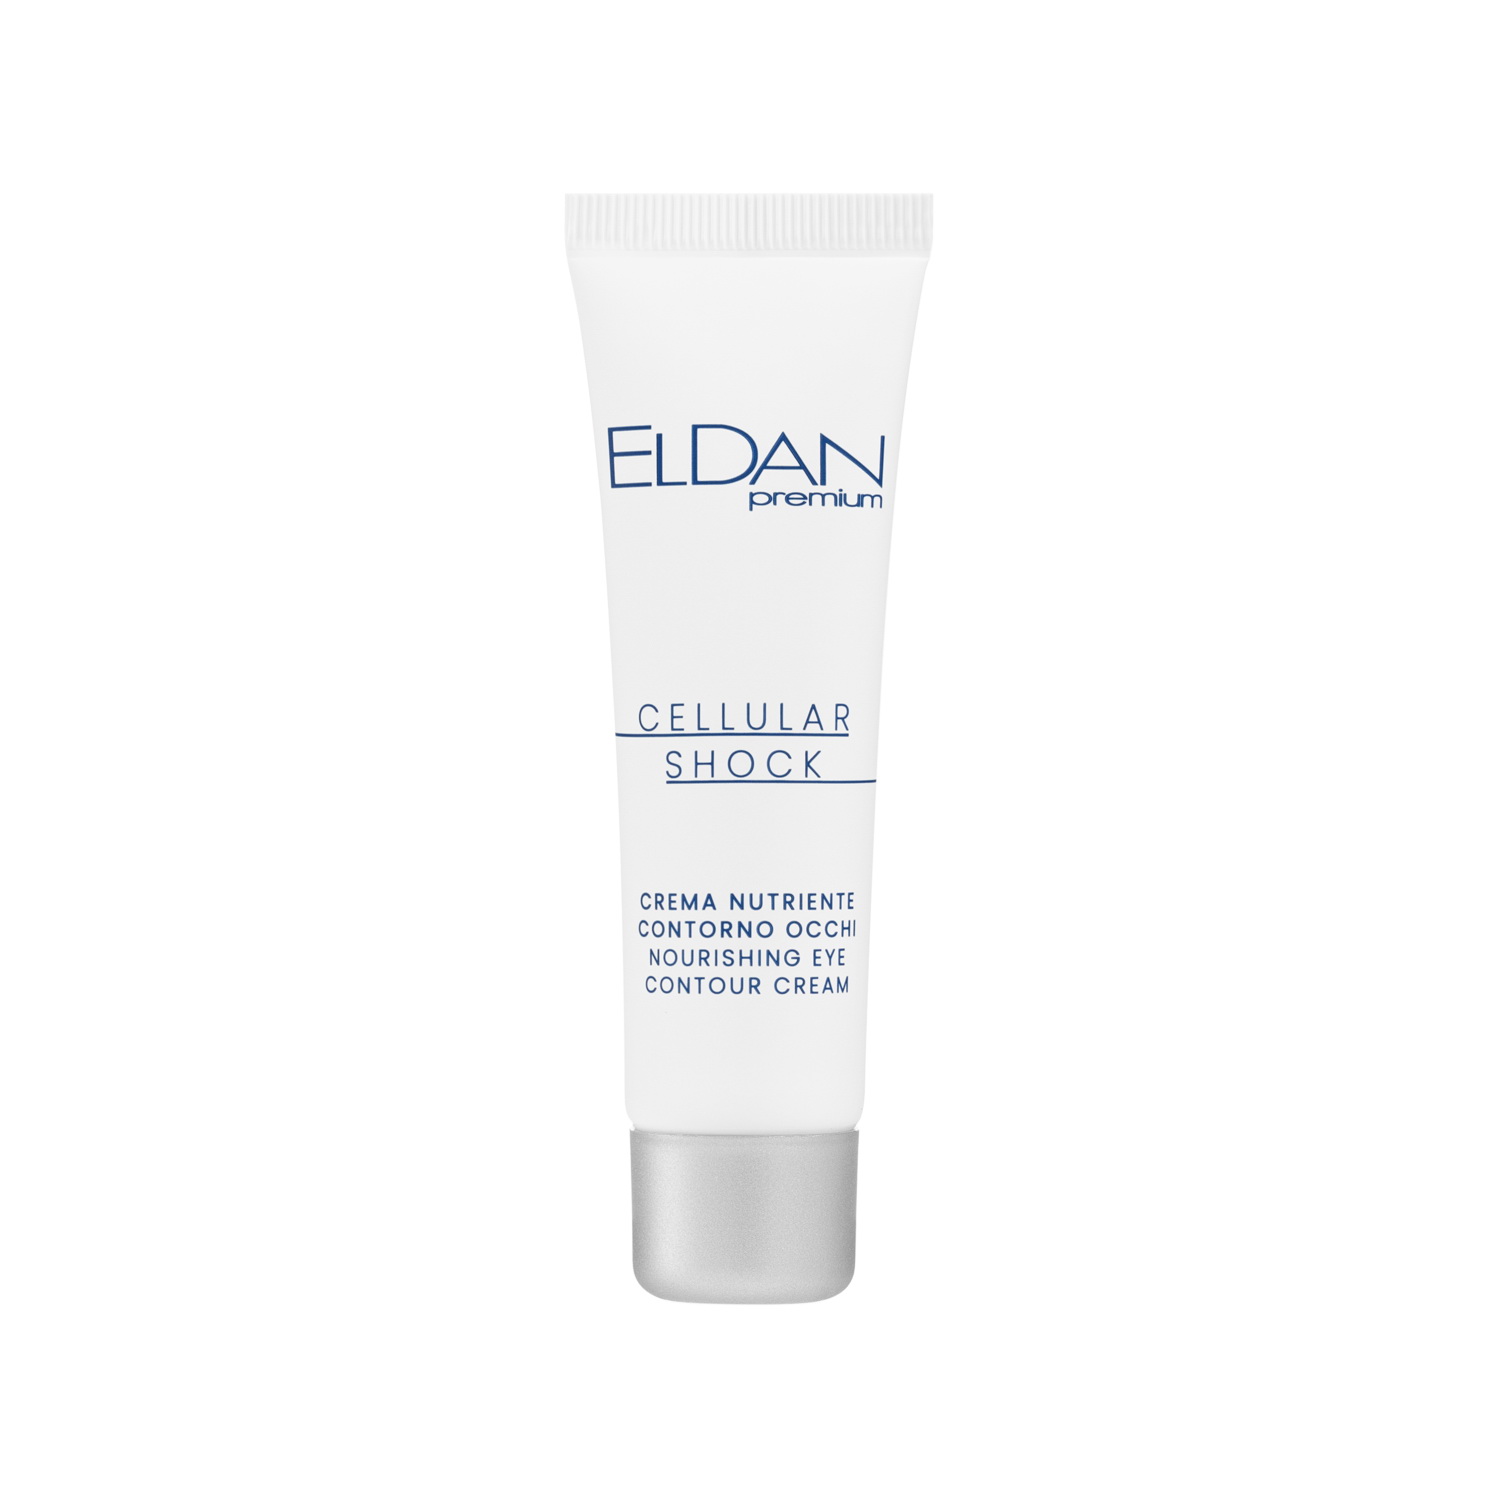 Крем для глаз ELDAN Cosmetics Premium Cellular Shock для увлажнения и питания, 30 мл средство eldan cosmetics premium для упругости и объема губ 15 мл